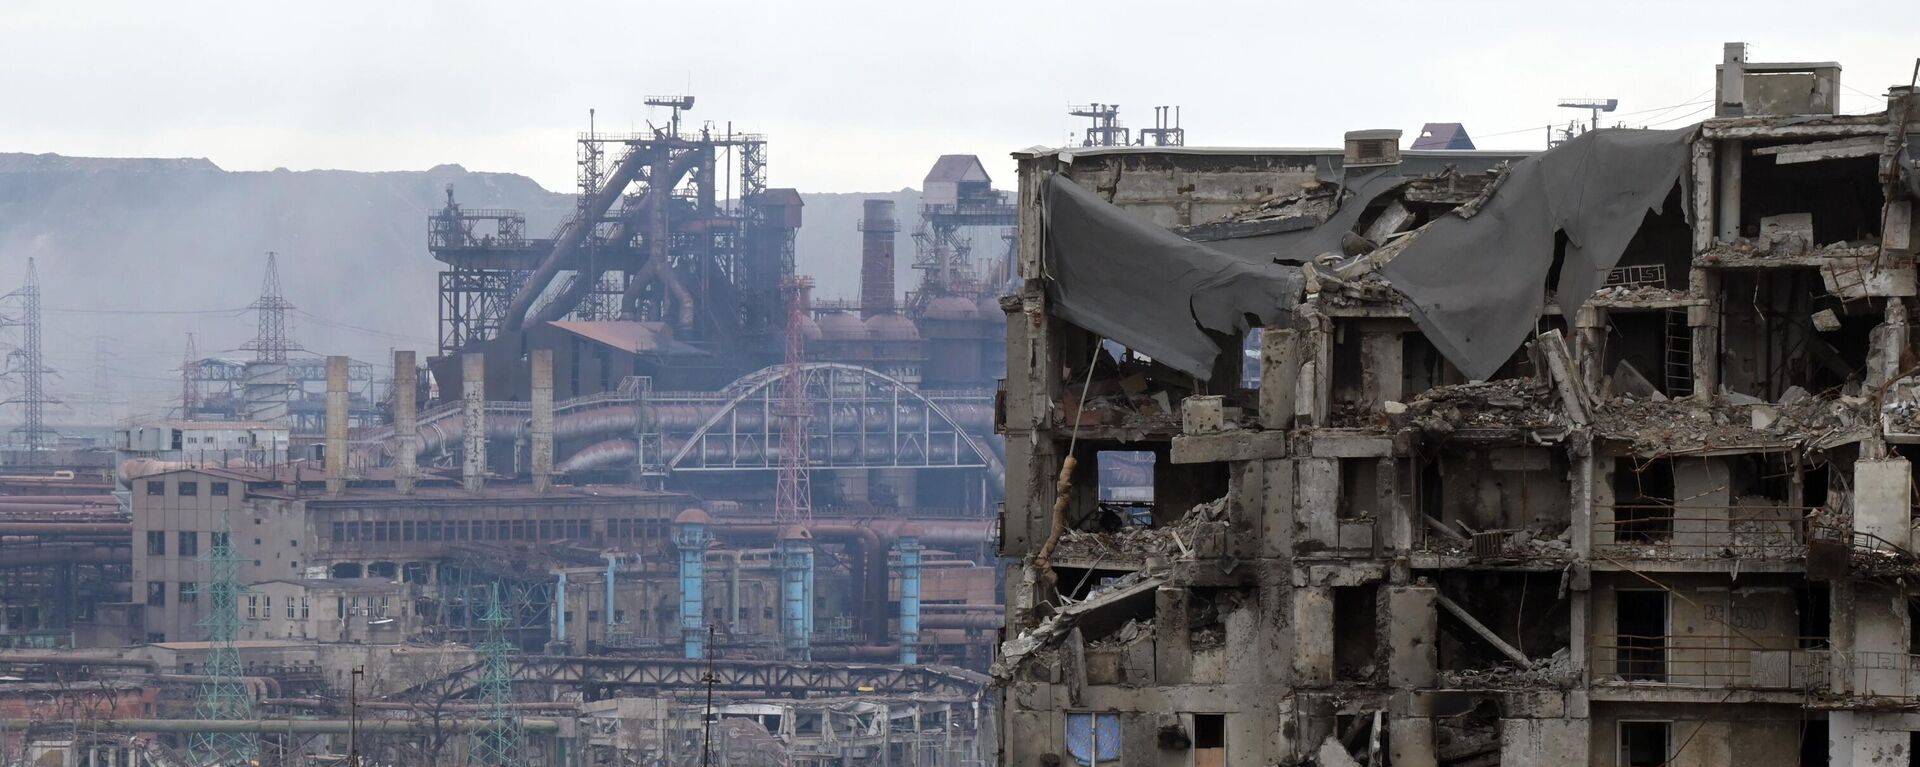 منظر لمبنى سكني مدمر على خلفية مصنع آزوفستال في ماريوبول، أوكرانيا 23 أبريل 2022 - سبوتنيك عربي, 1920, 18.07.2022